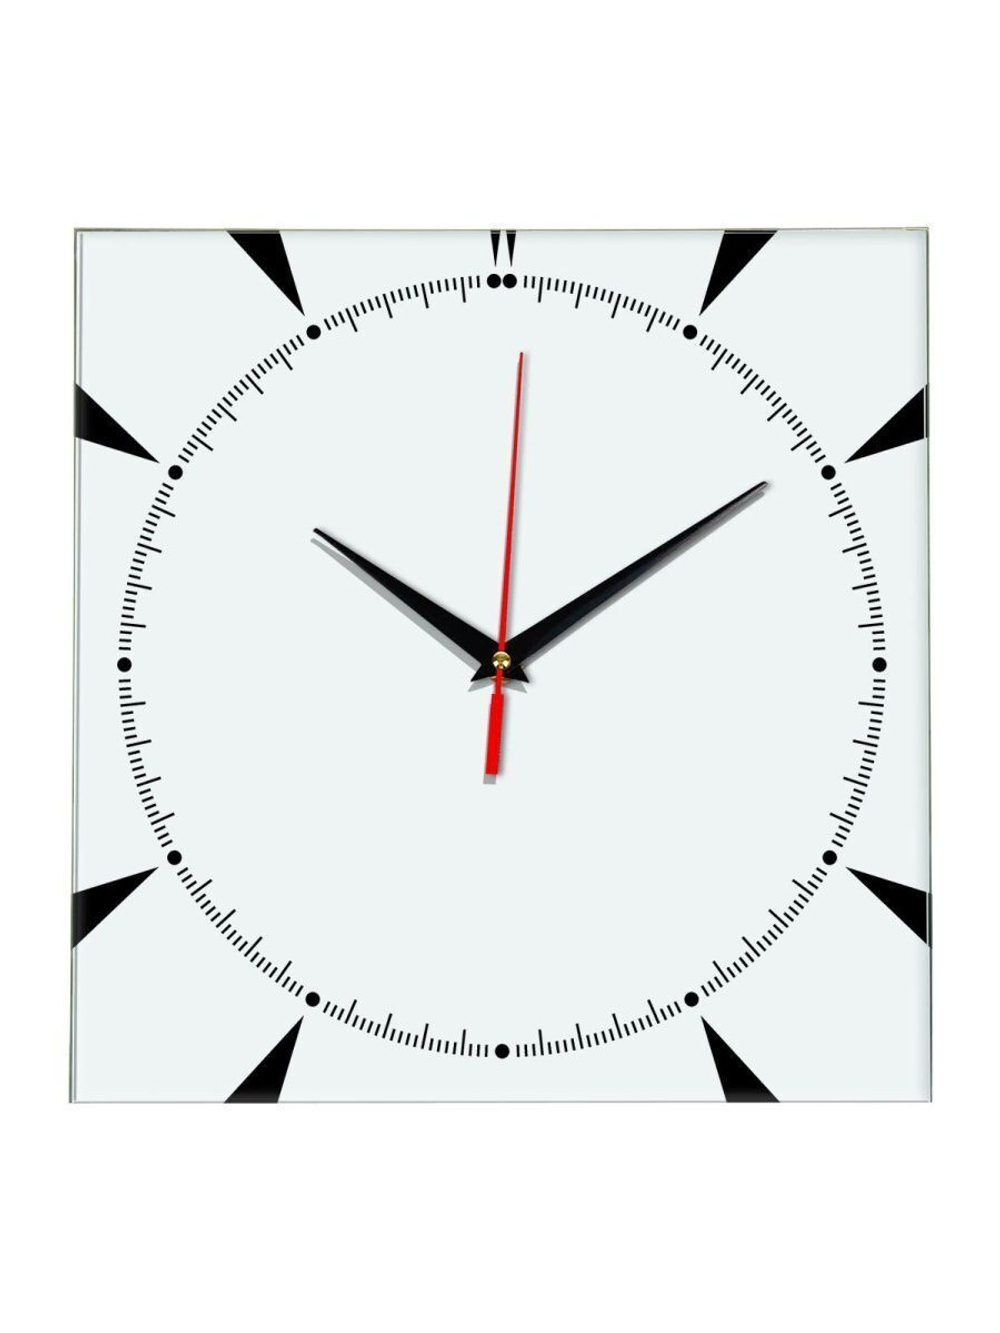 Настенные часы Ideal 867 белые (-)